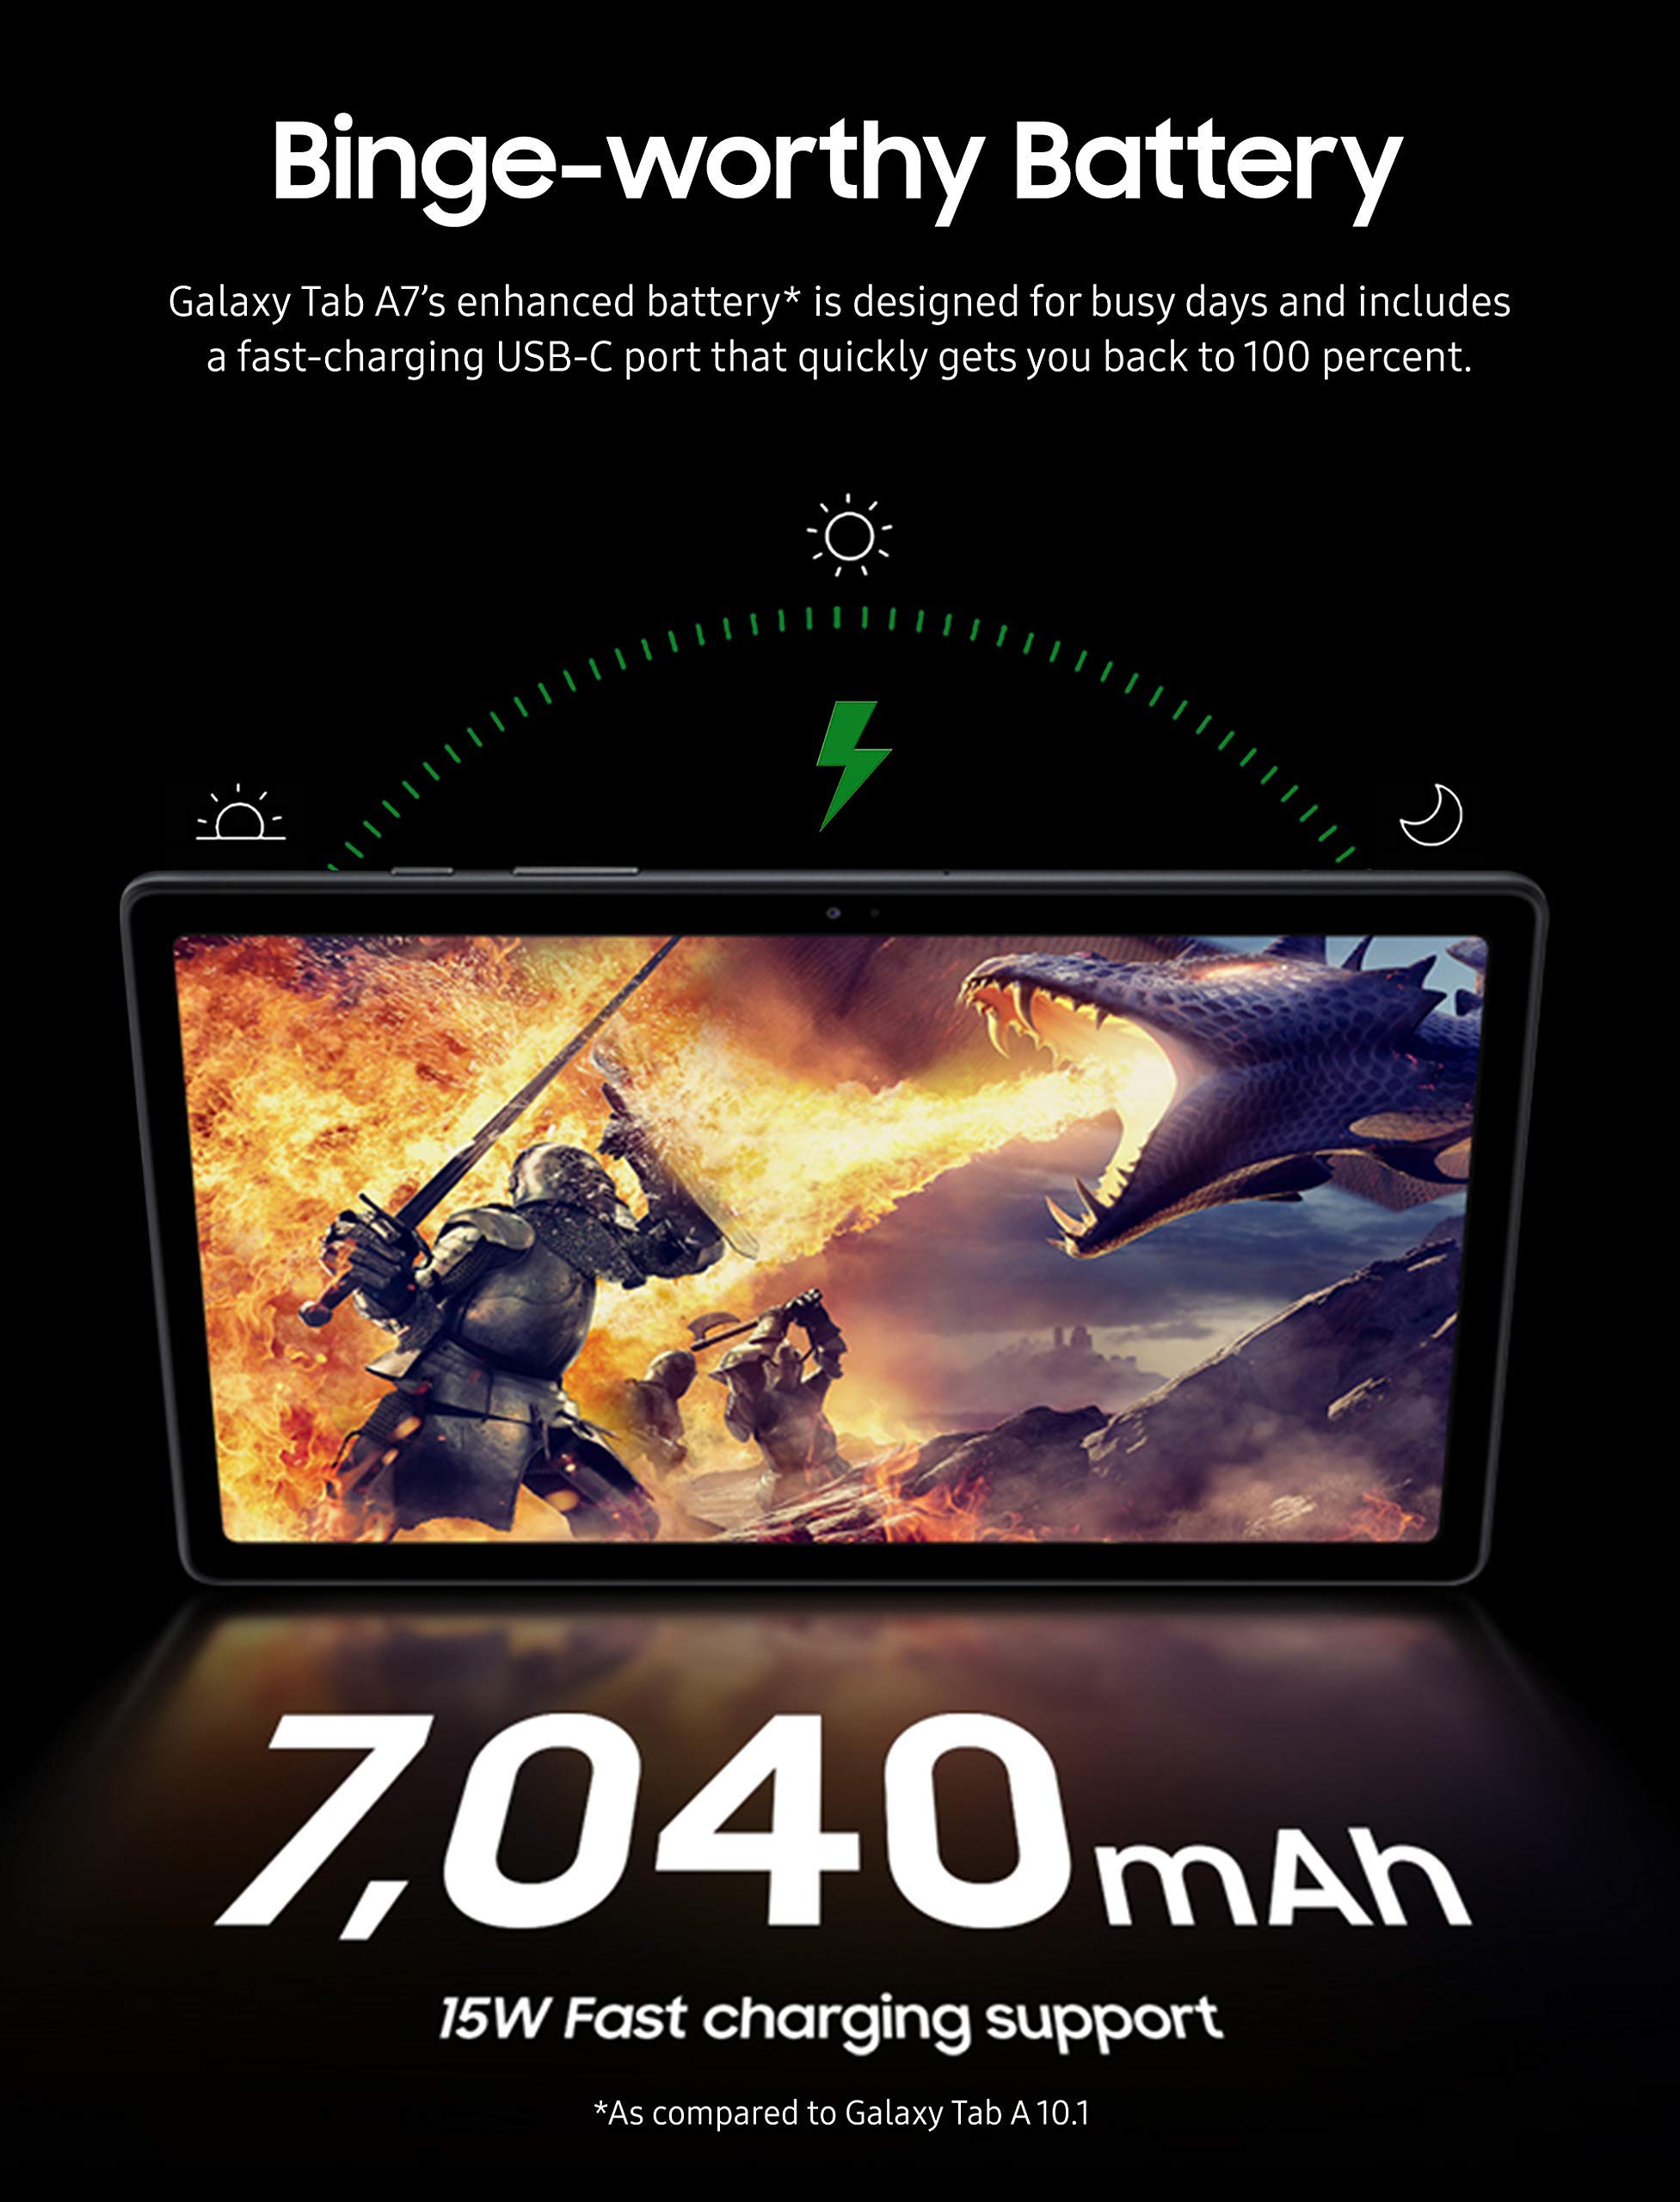 SAMSUNG Galaxy Tab A7 10.4 Wi-Fi 64GB Silver (SM-T500NZSEXAR) (Renewed)